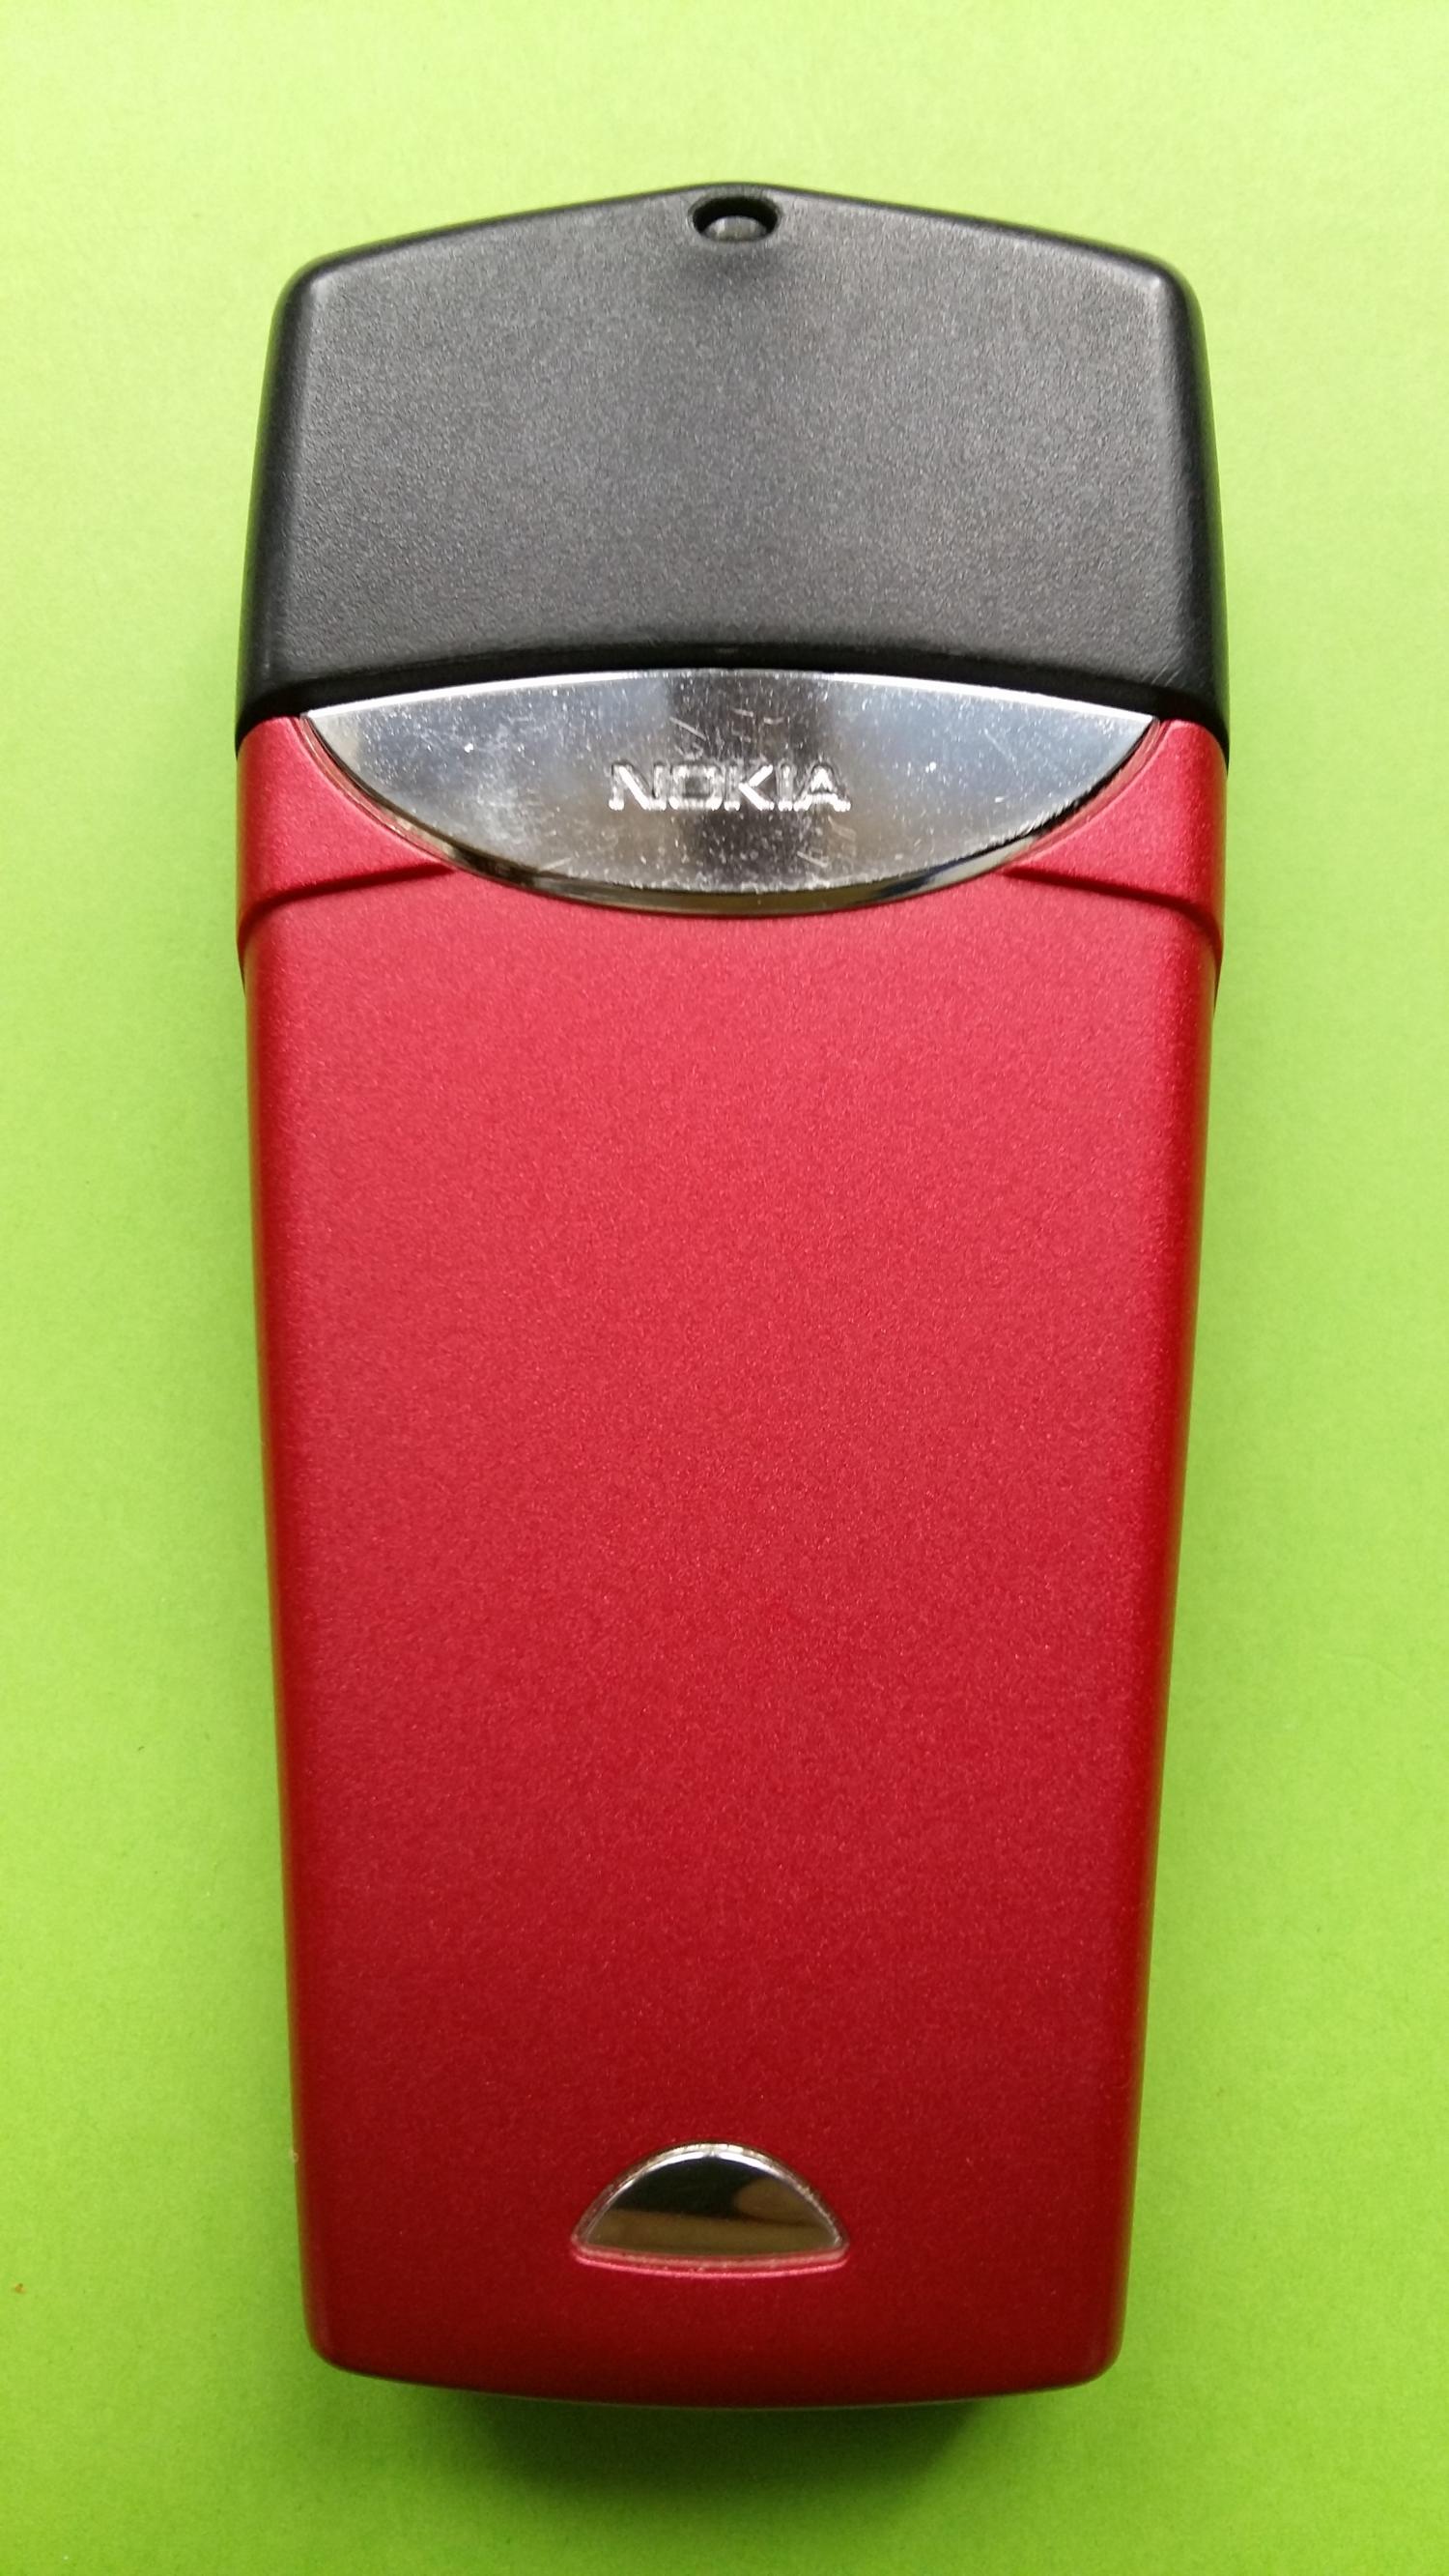 image-7324772-Nokia 8310 (2)2.jpg